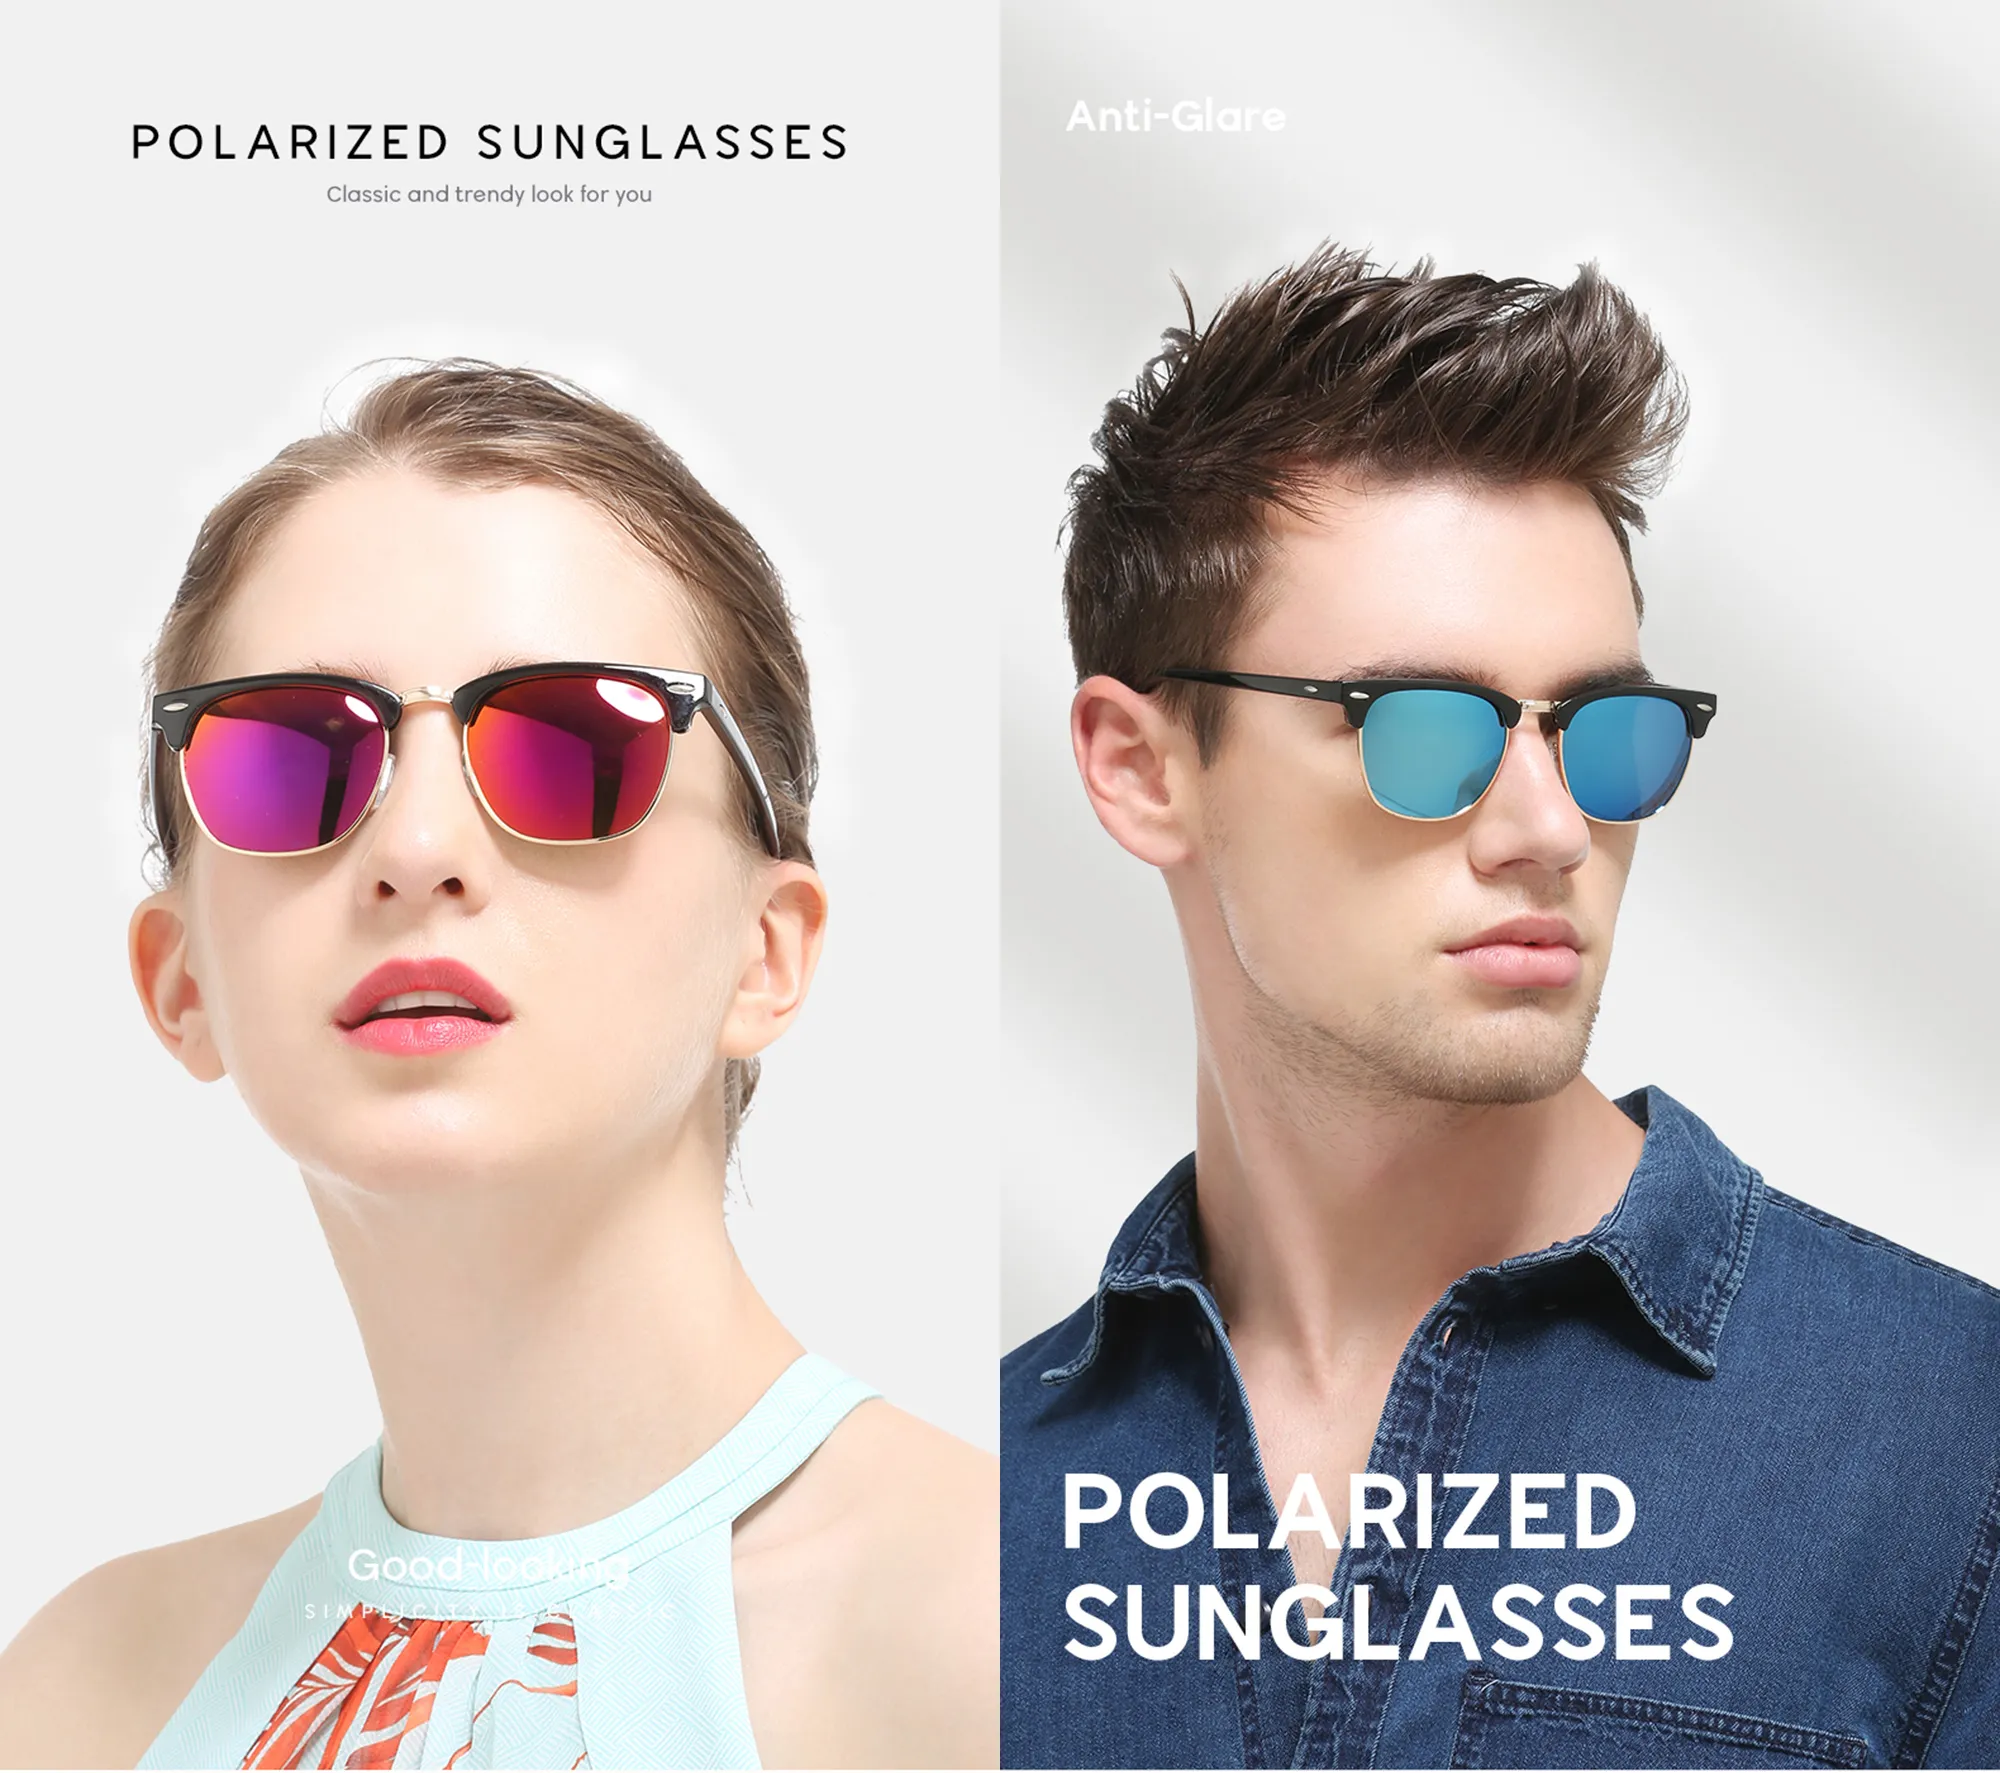 Zoelea Бренд Поляризованные солнцезащитные очки для мужчин Женщины Анти-блики UV400 Защита дизайнерские оттенки SEMI-RIMREL RIDER Вождение Солнцезащитный Стекло FBA Склад FBA Быстрая доставка